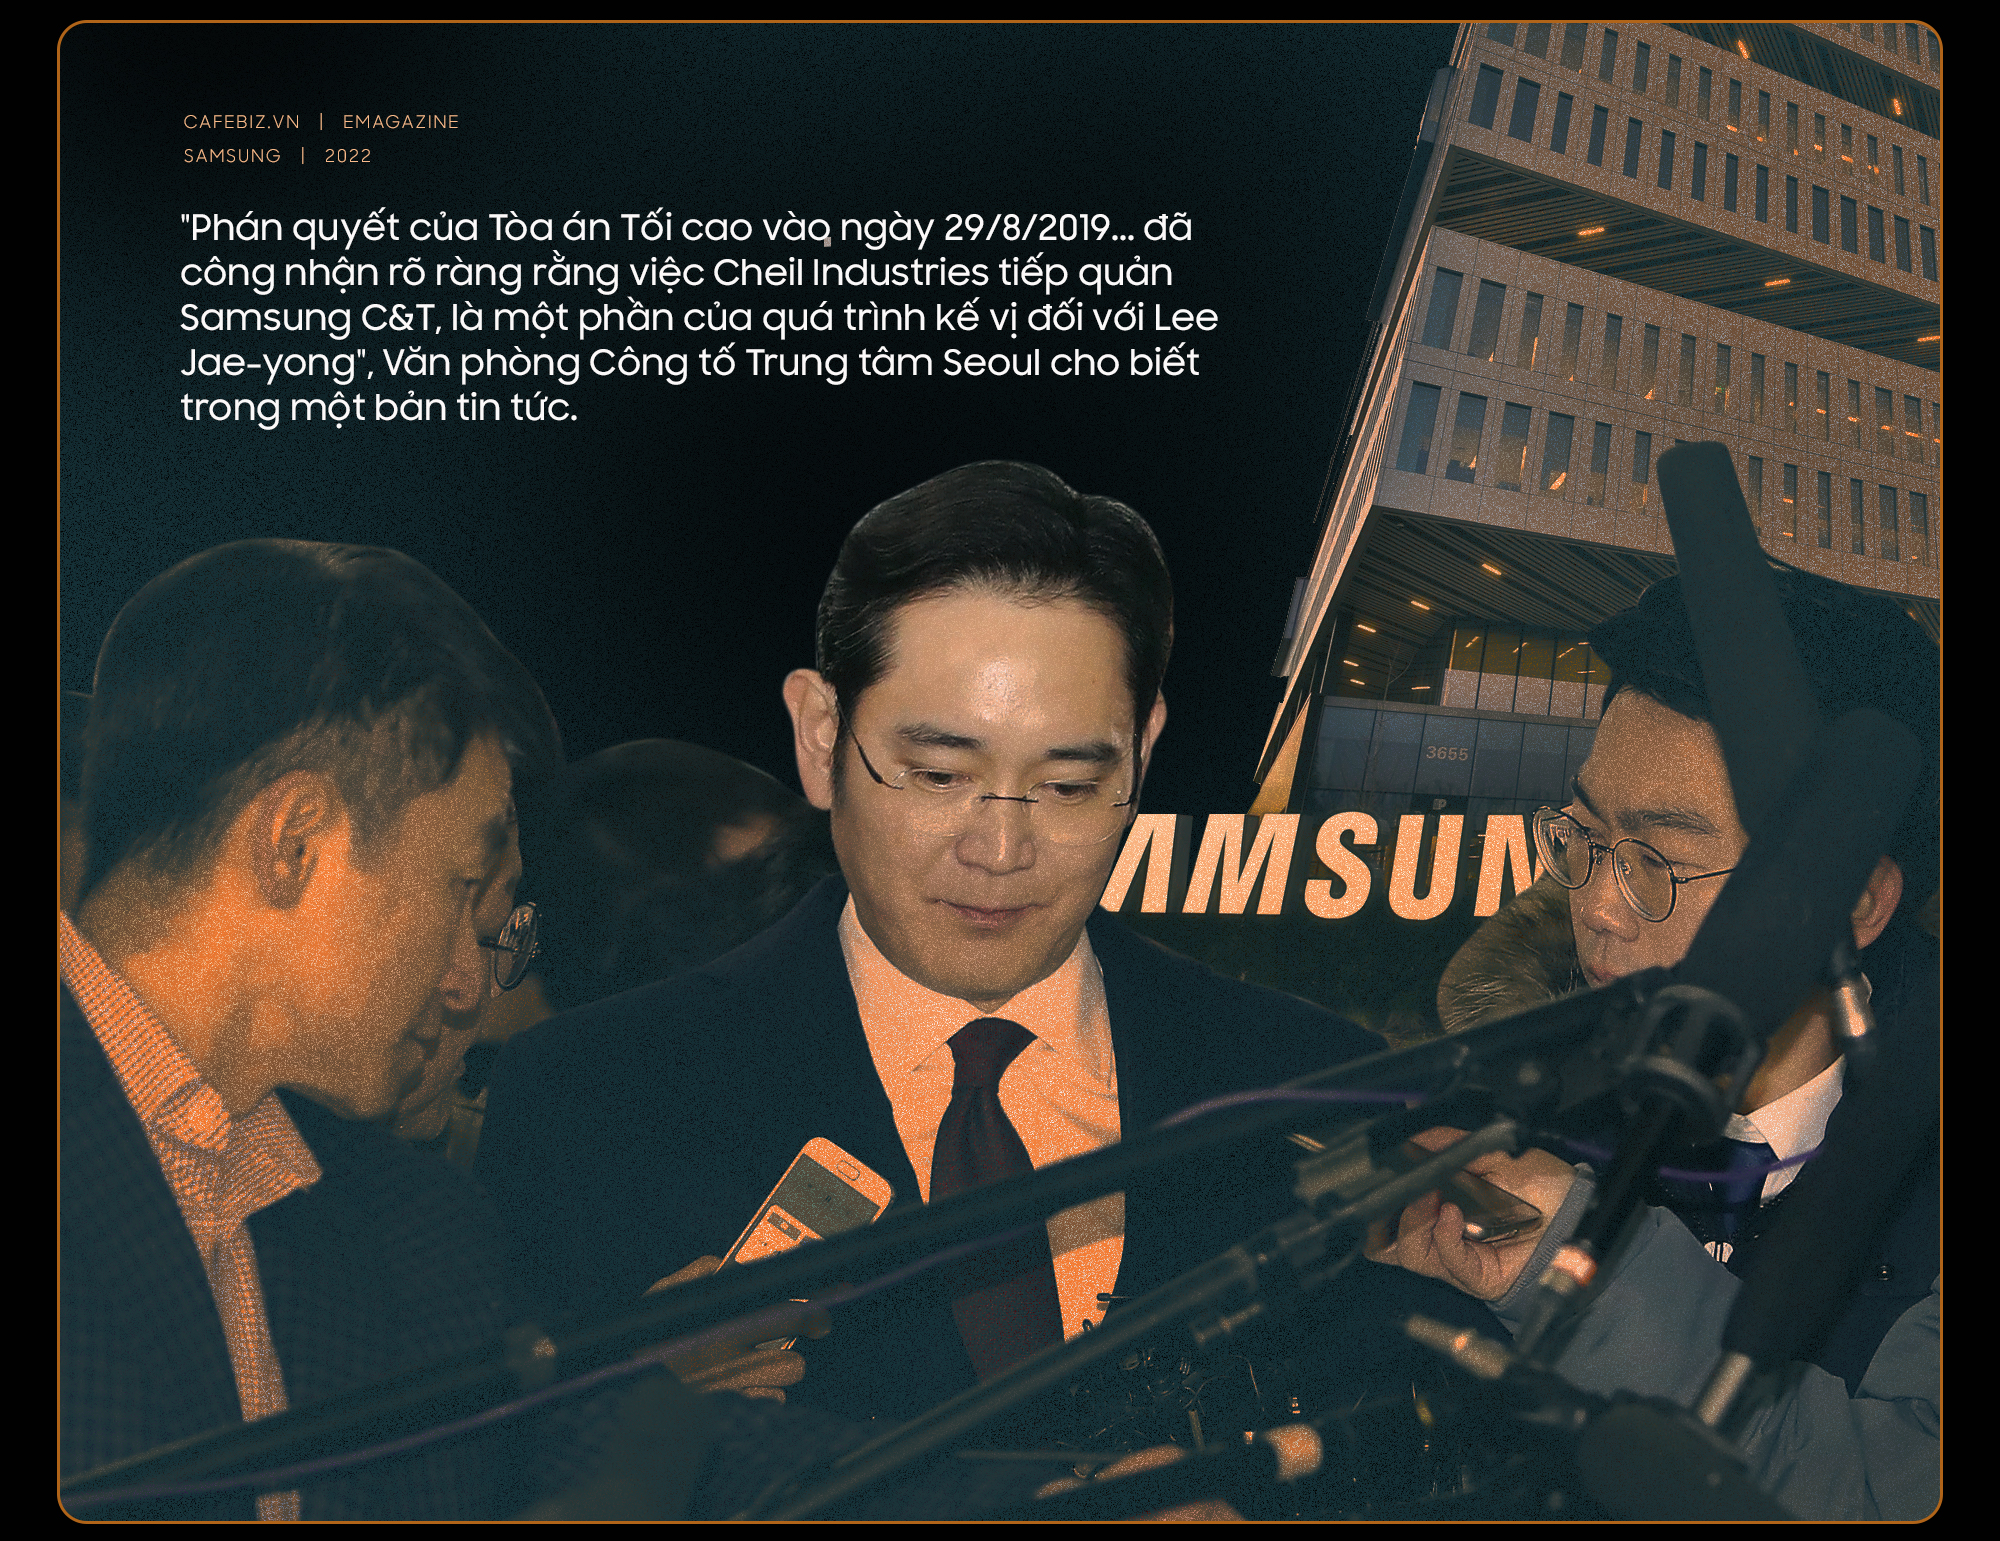 Chuyện thâm cung bí sử ở gia tộc Samsung và bước ngoặt không ngờ ở triều đại của thái tử Lee Jae-yong - Ảnh 4.